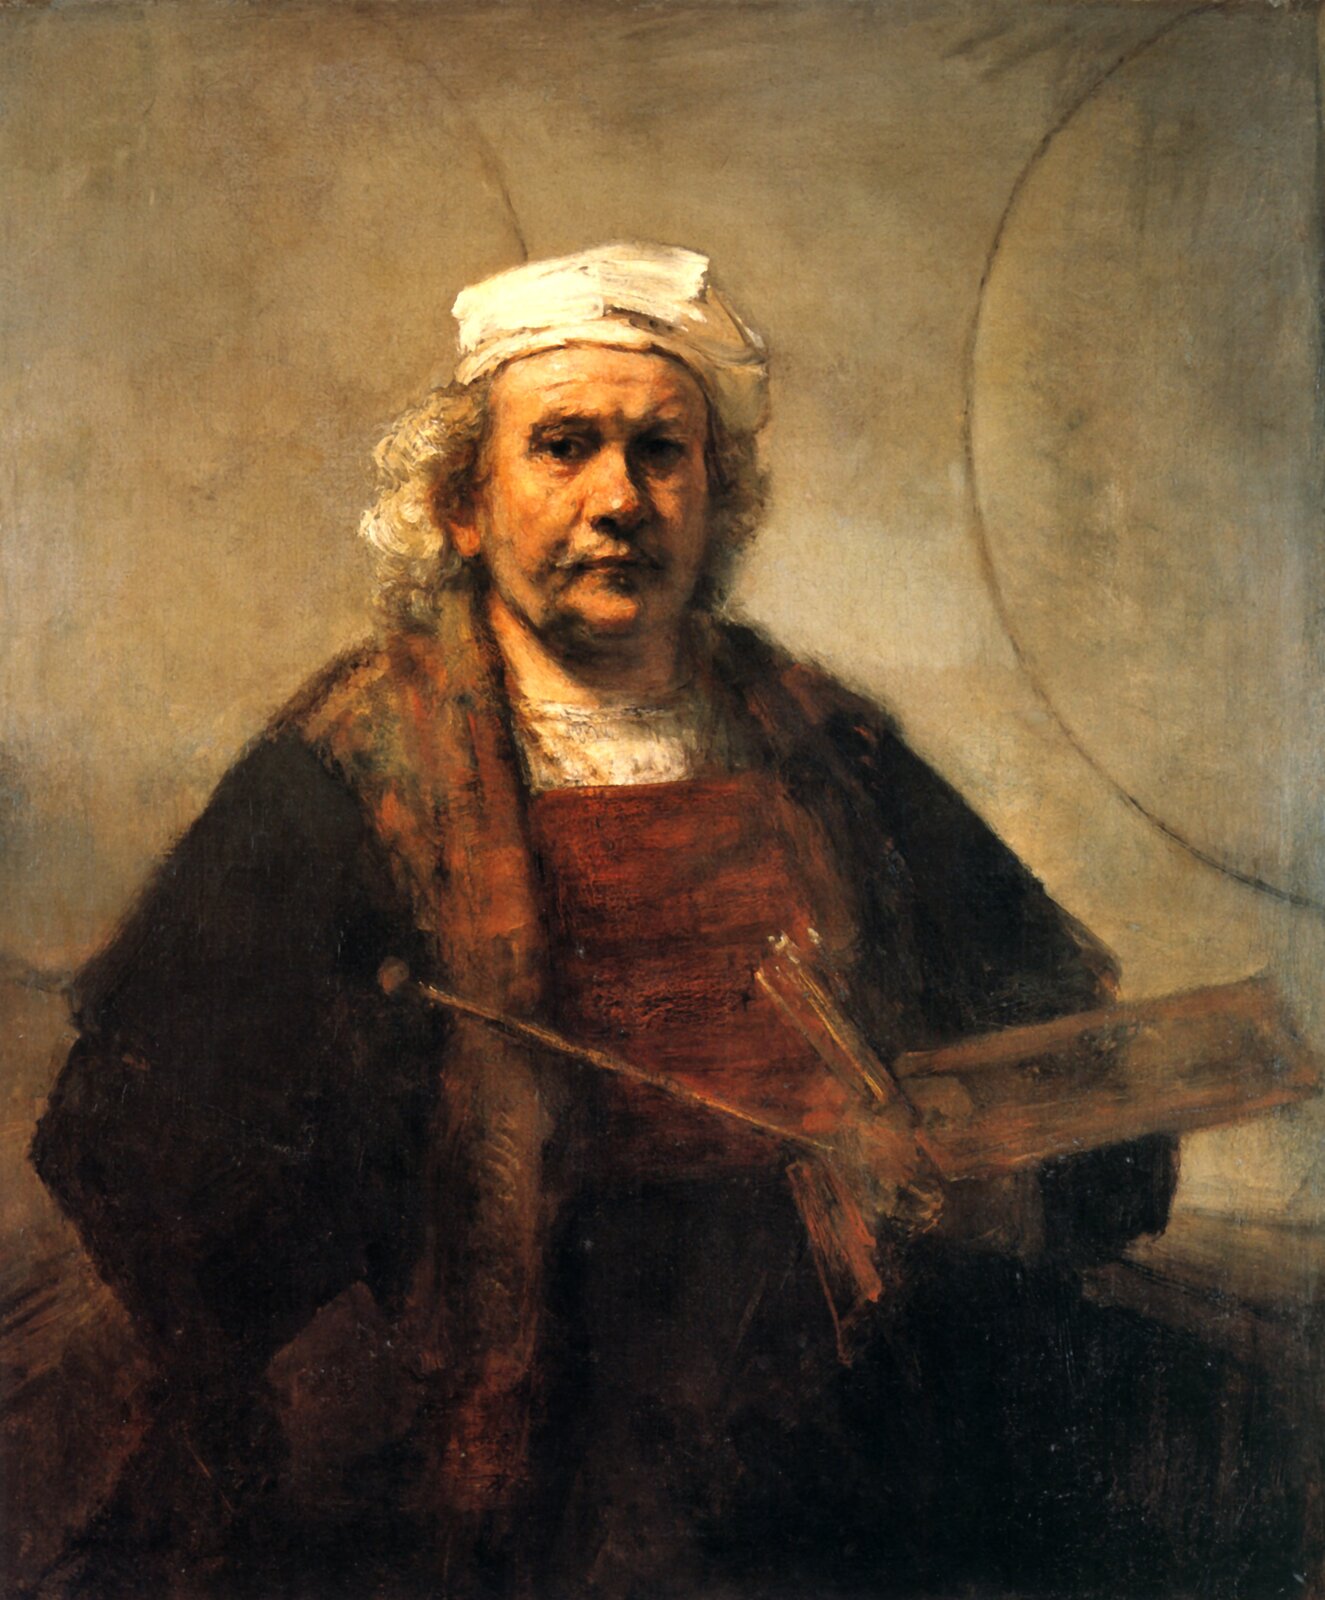 Ilustracja przedstawia "Autoportret z dwoma kołami" Rembrandta. Ukazuje malarza w podeszłym wieku na tle szarej ściany, z dwoma wyrysowanymi fragmentami kół. Postać została przedstawiona w swojej pracowni w ubiorze roboczym z narzuconym na niego płaszczem oraz białą czapką. W lewej dłoni trzyma paletę, pędzle i laskę malarską.